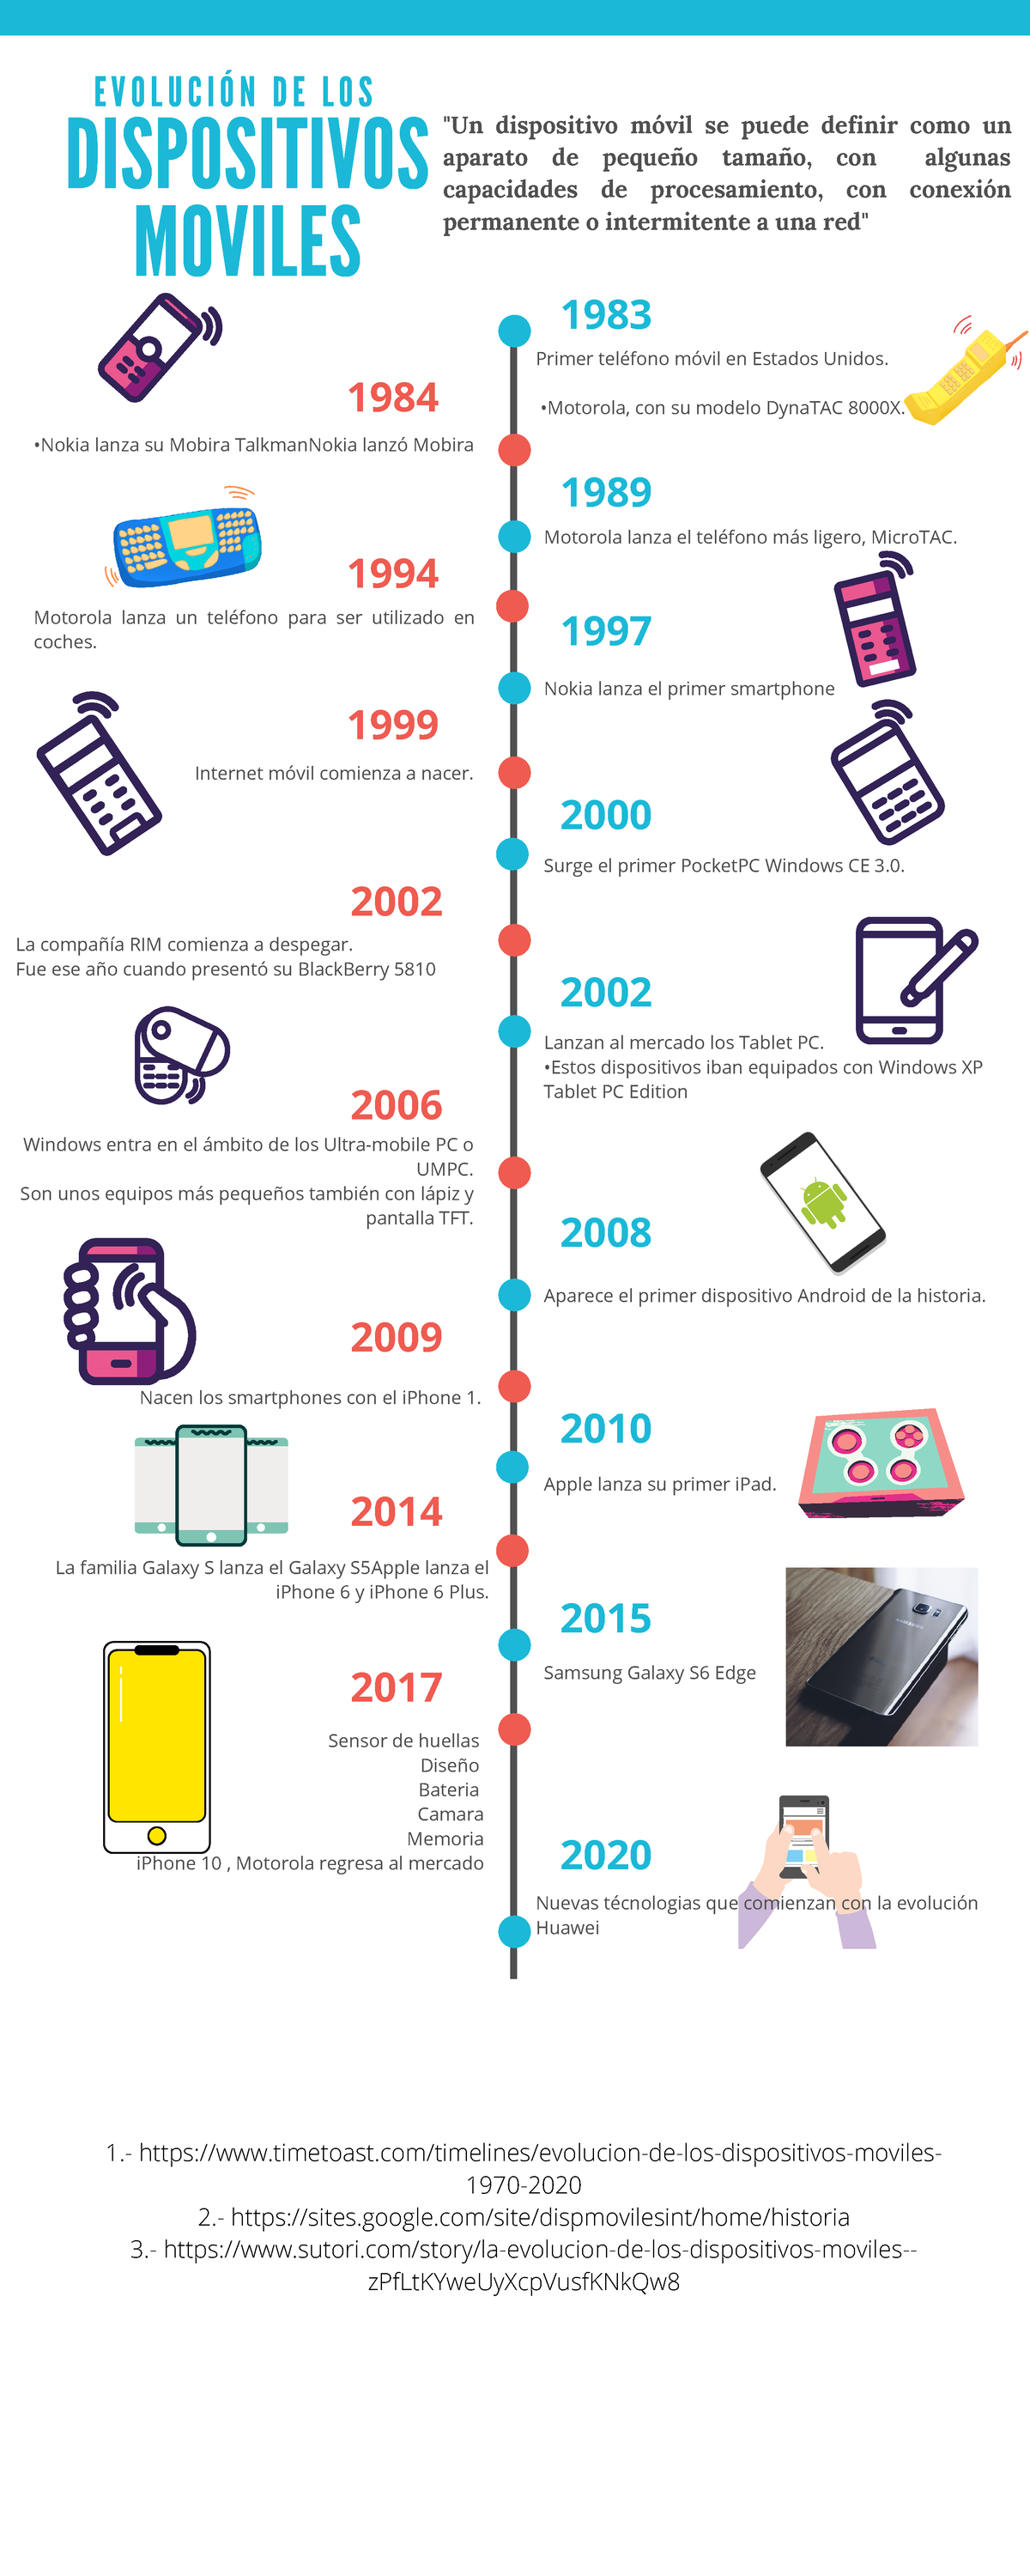 La evolución del tamaño de los móviles (1984-2014) - Libertad Digital